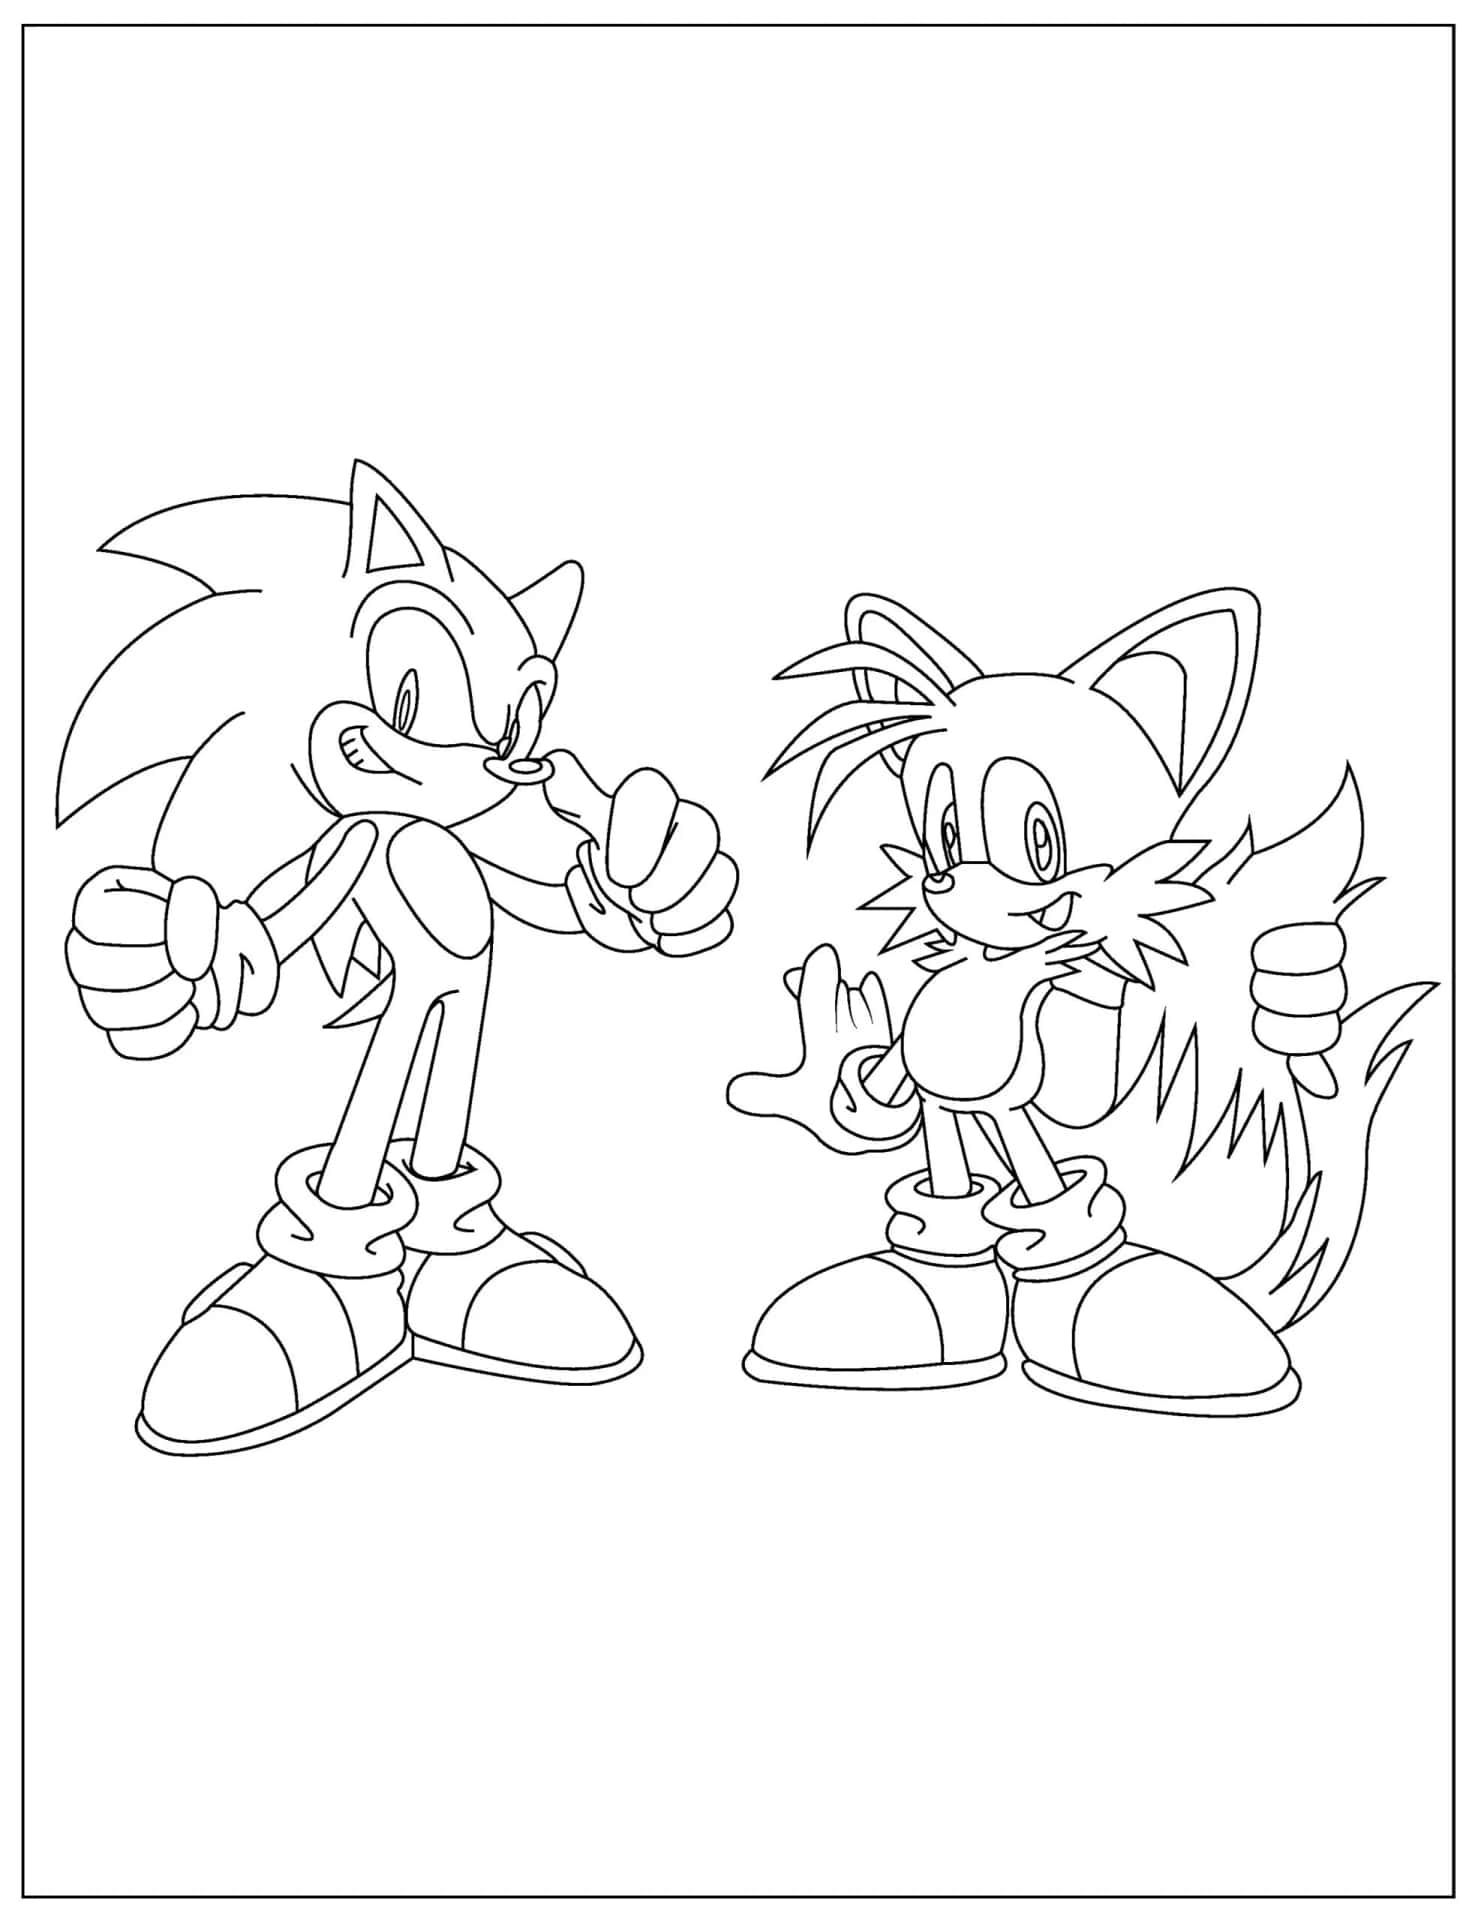 Pagineda Colorare Di Sonic E Sonic The Hedgehog.